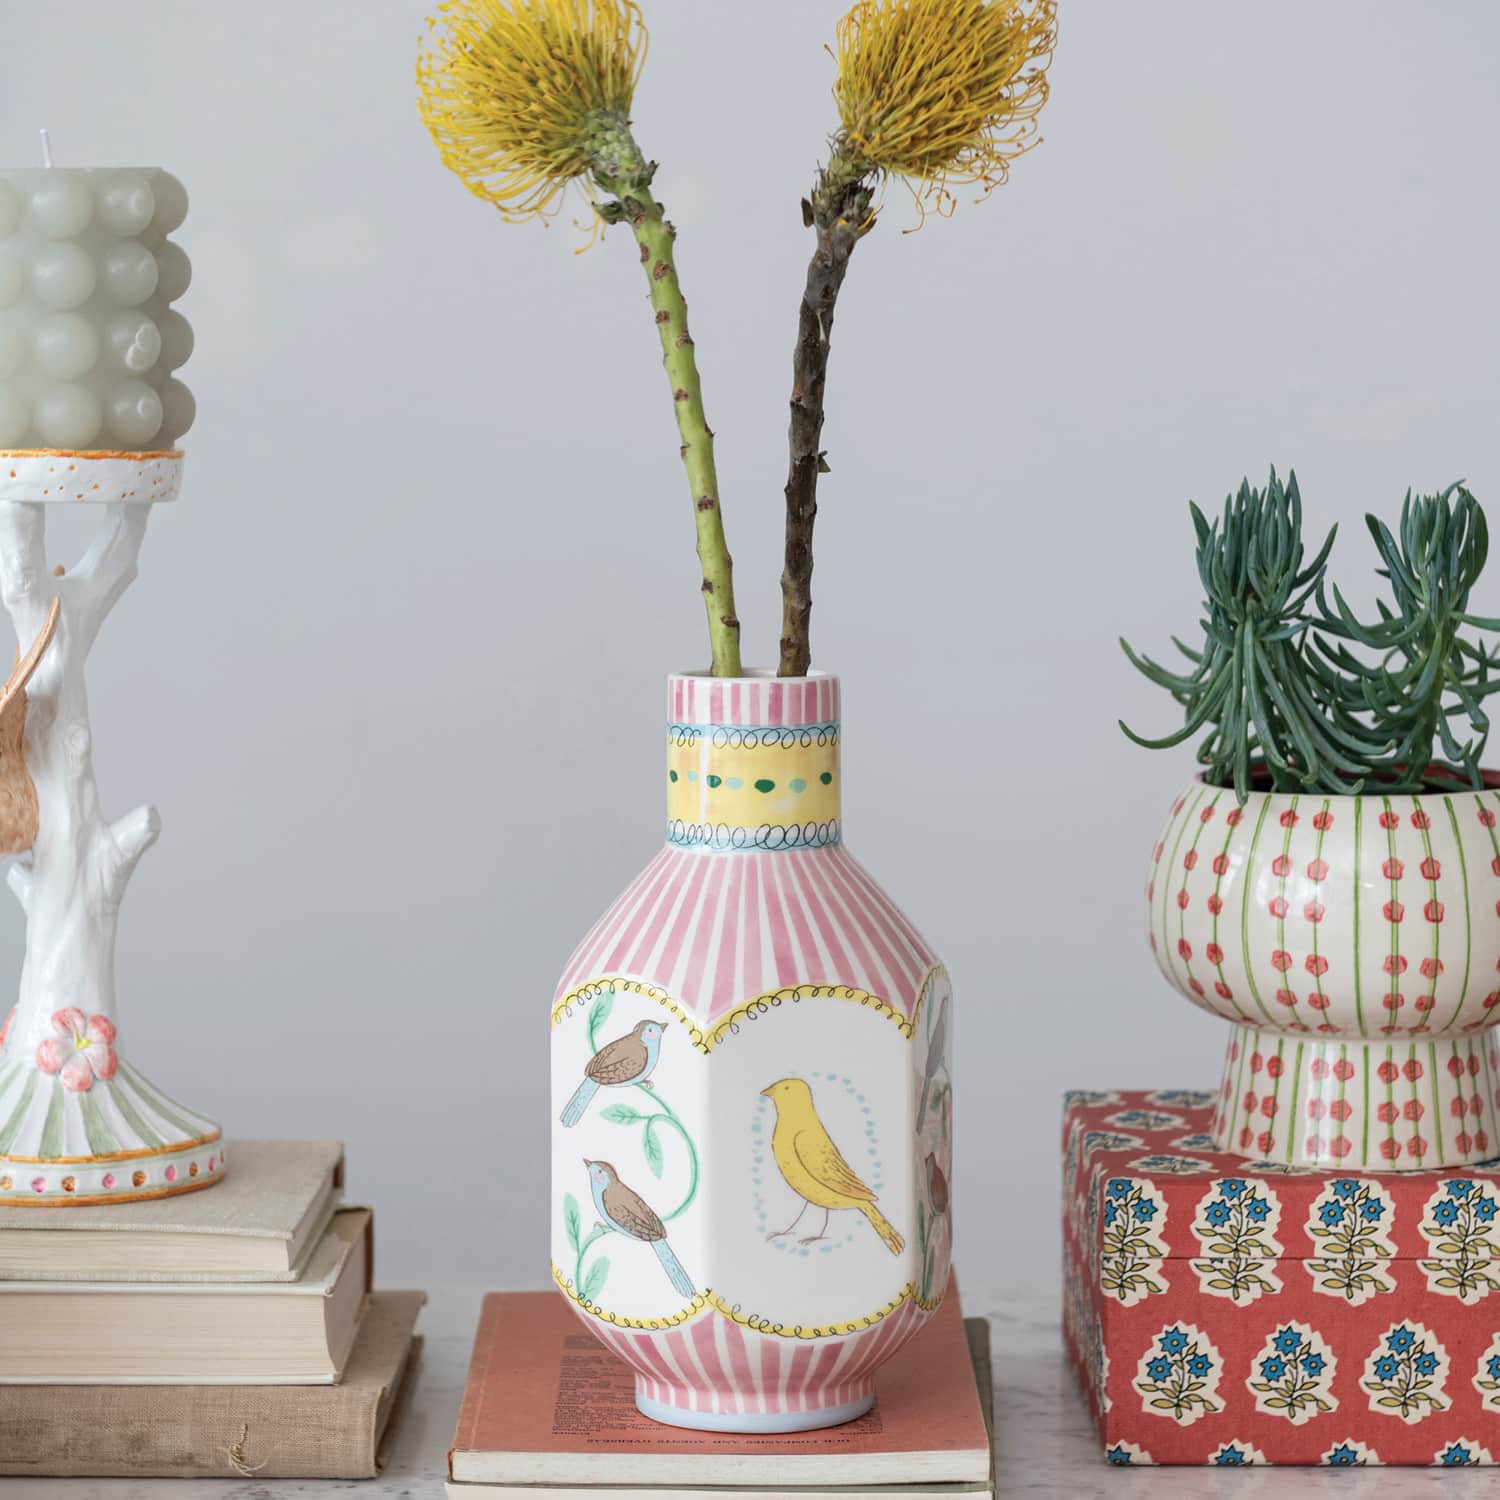 8&#x22; Painted Bird Design Ceramic Vase